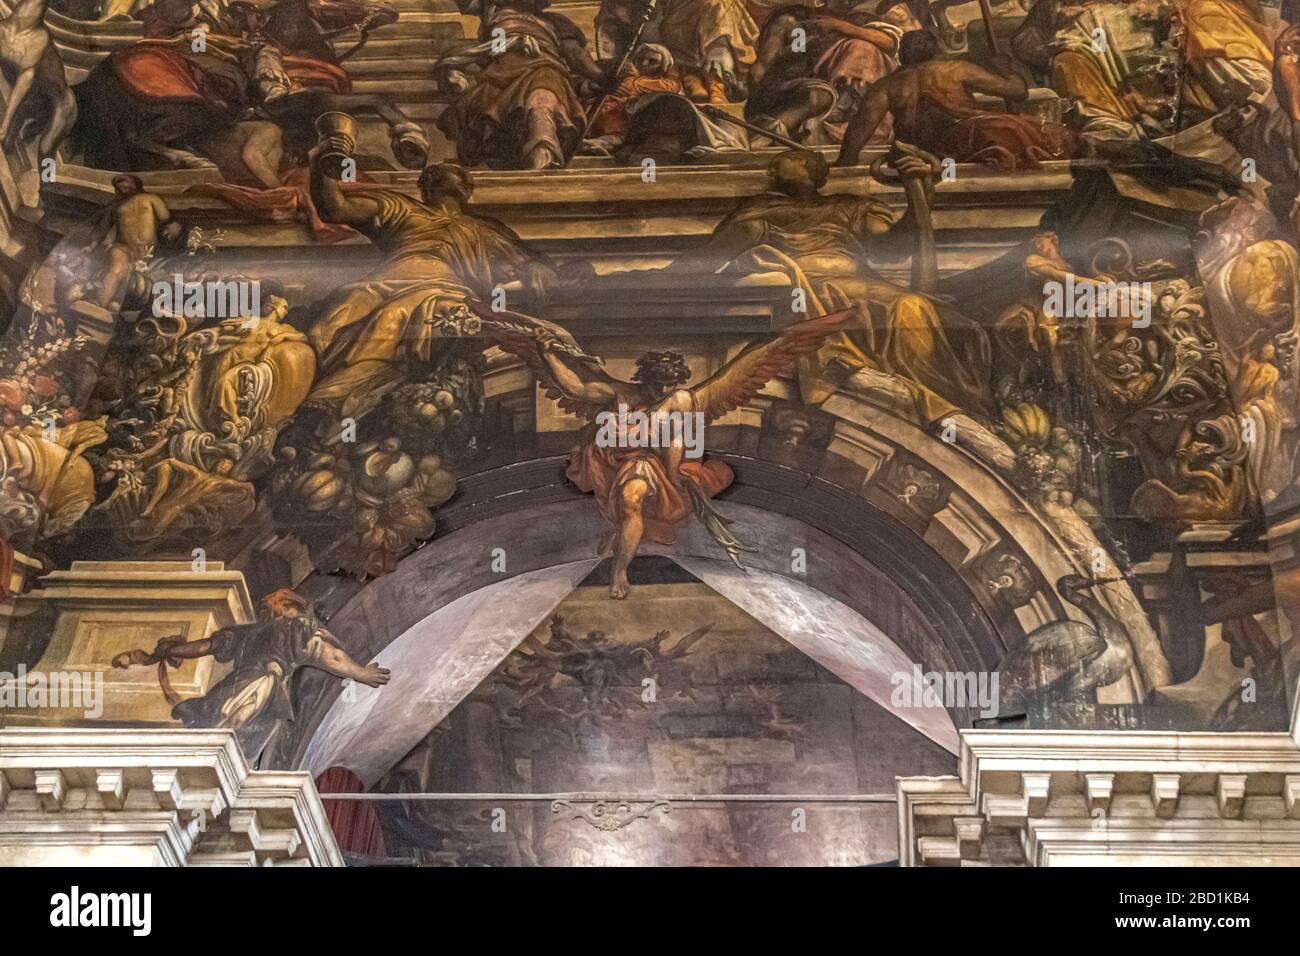 Le plafond de Chiesa di San Pantalon, englouti dans une vaste trompe l'oeil fresque par Giantonio Fumiani, peint en 1704, Veniice, Italie Banque D'Images